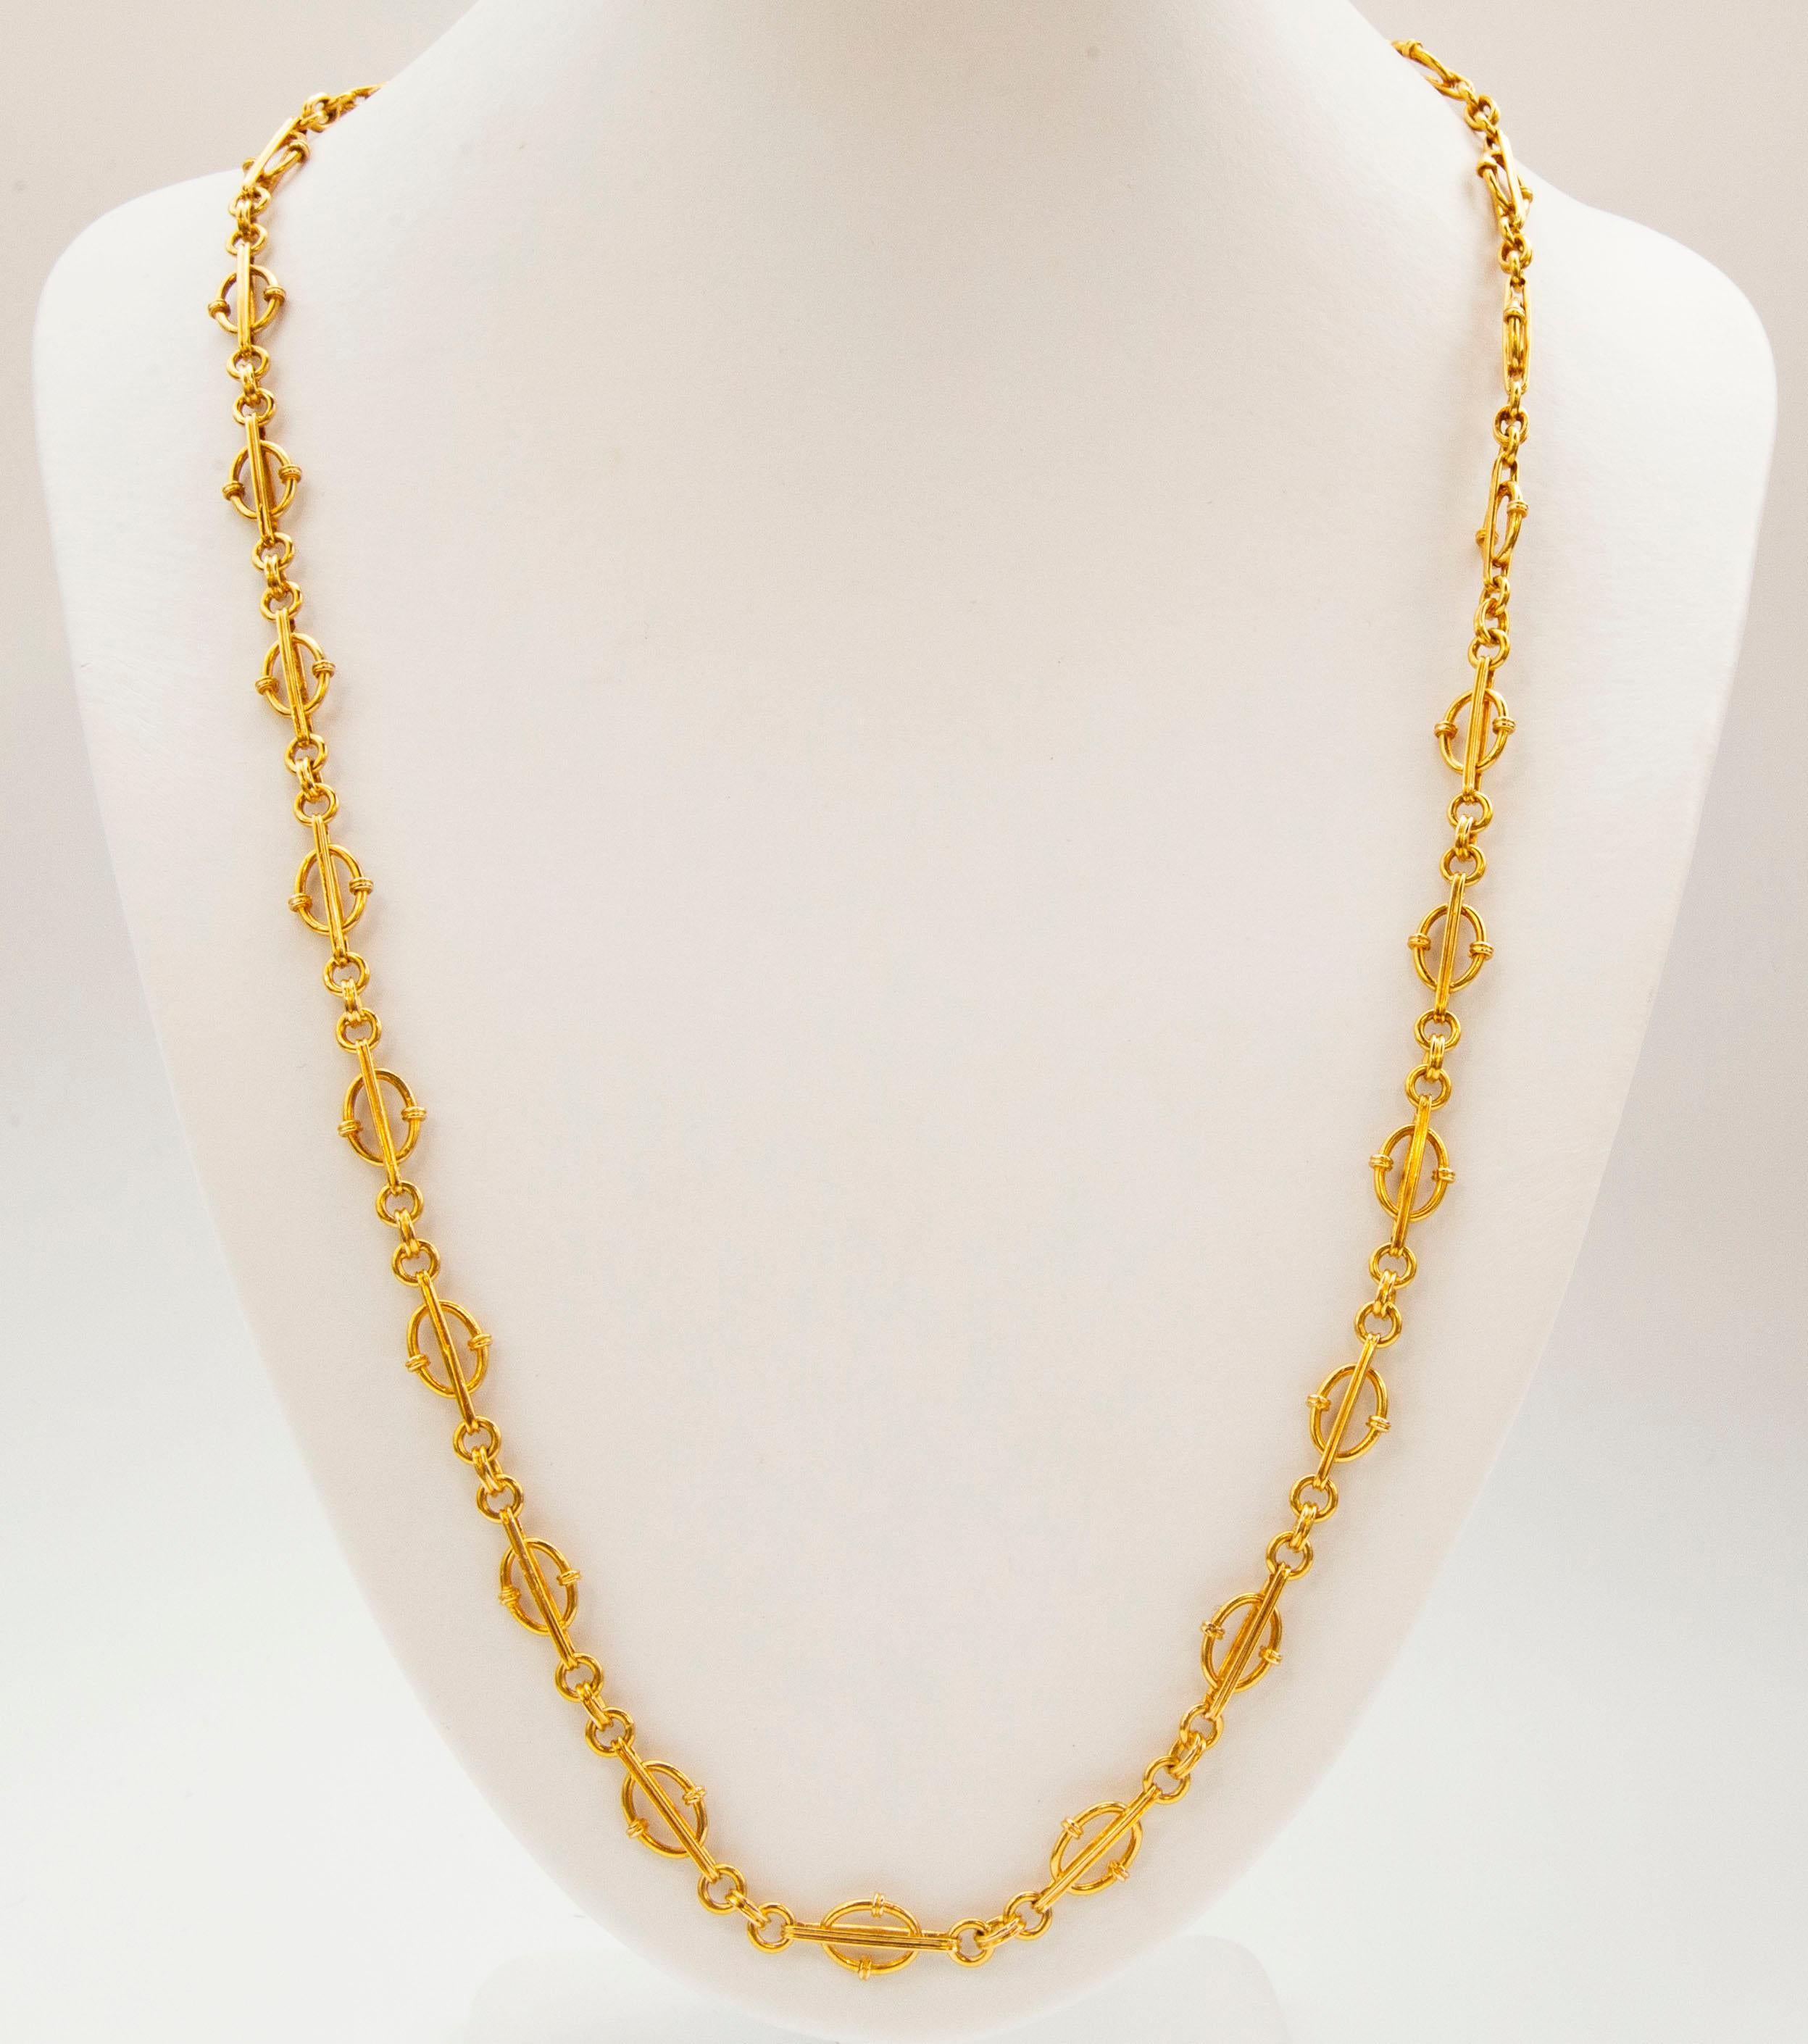 Ein Vintage 18 Karat massivem Gelbgold Kette Halskette mit mehreren Einheiten, bestehend aus  drei miteinander verbundene Kreise, die an länglichen Gliedern befestigt sind, die mit offenen ovalen Rahmen gefüllt sind.  Die Halskette hat eine